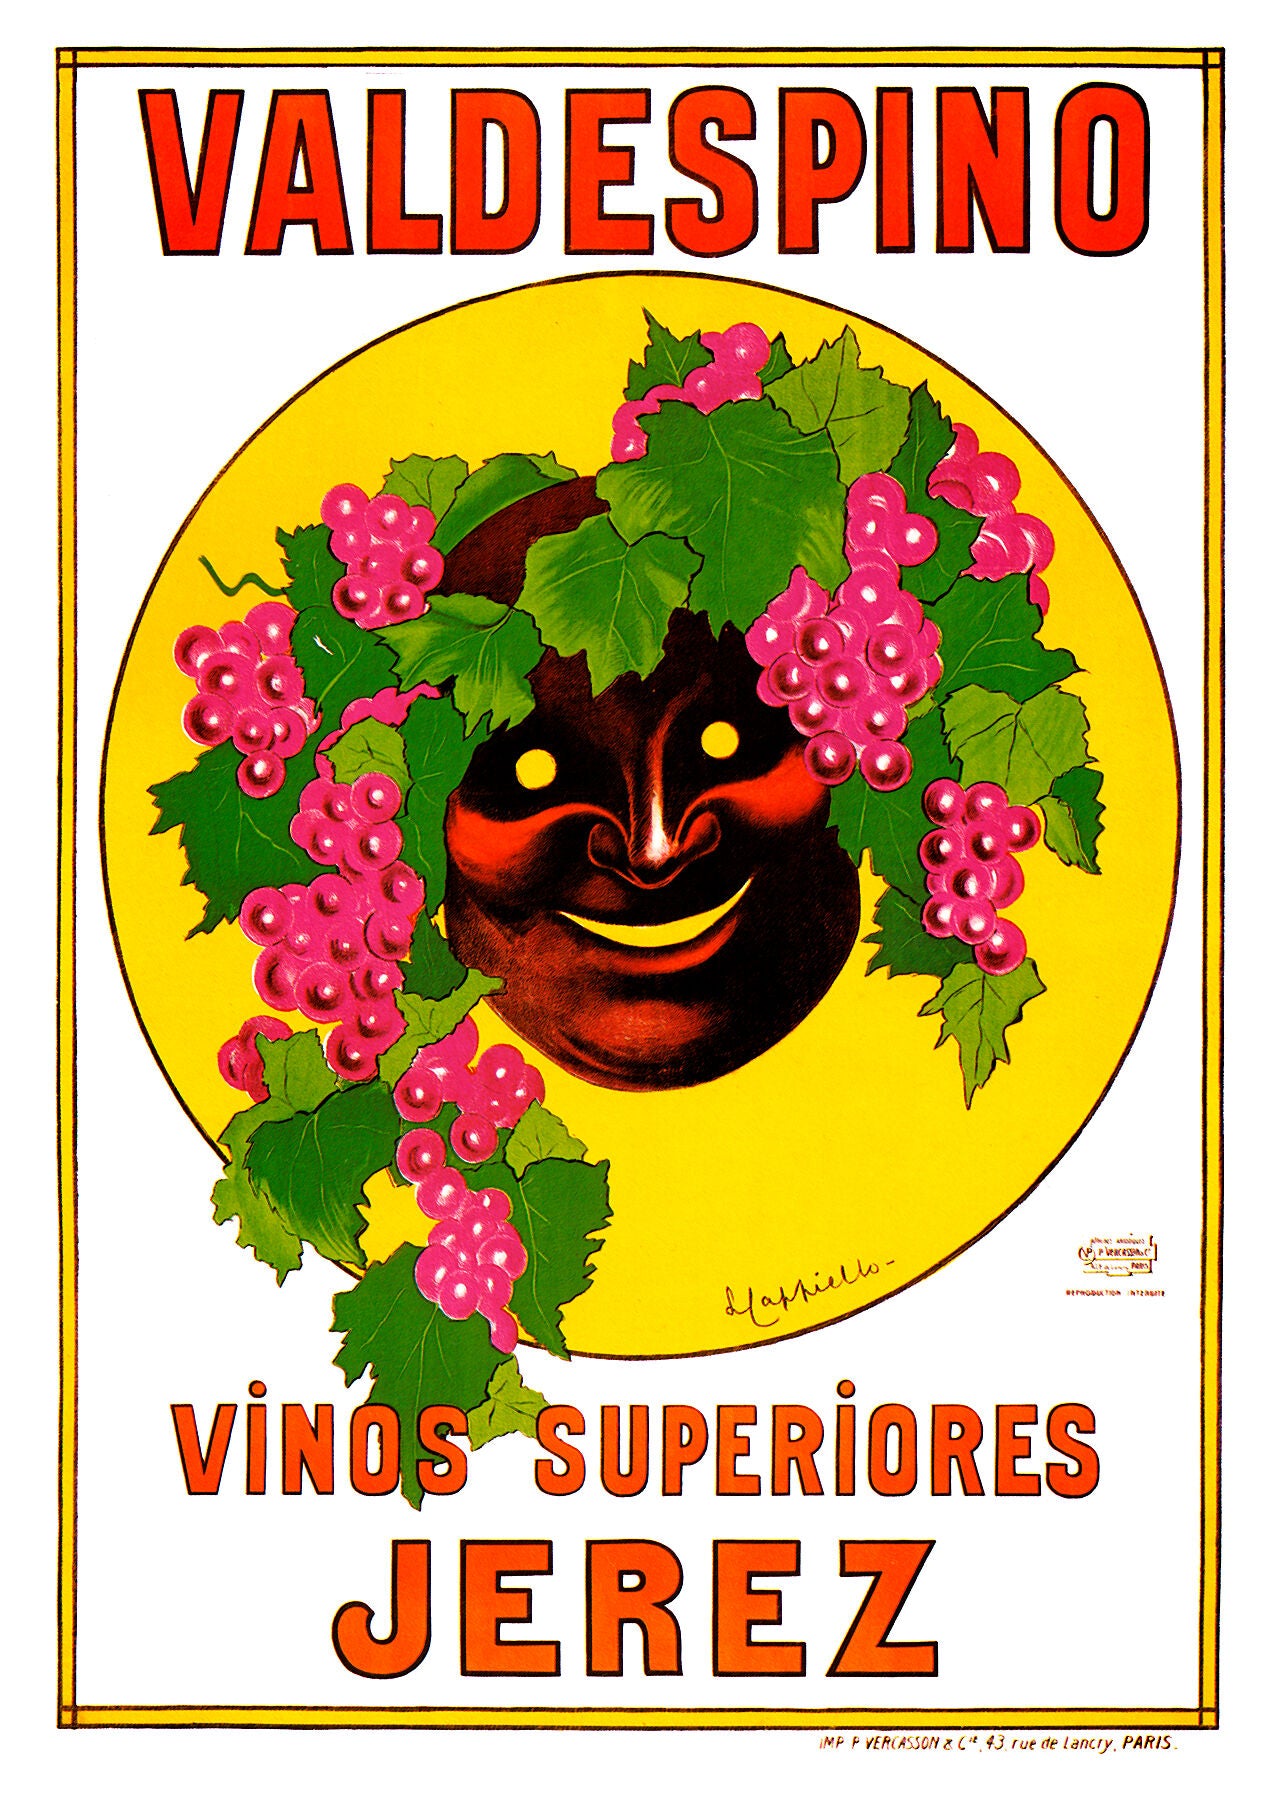 Valdespino Jerez poster by Leonetto Cappiello